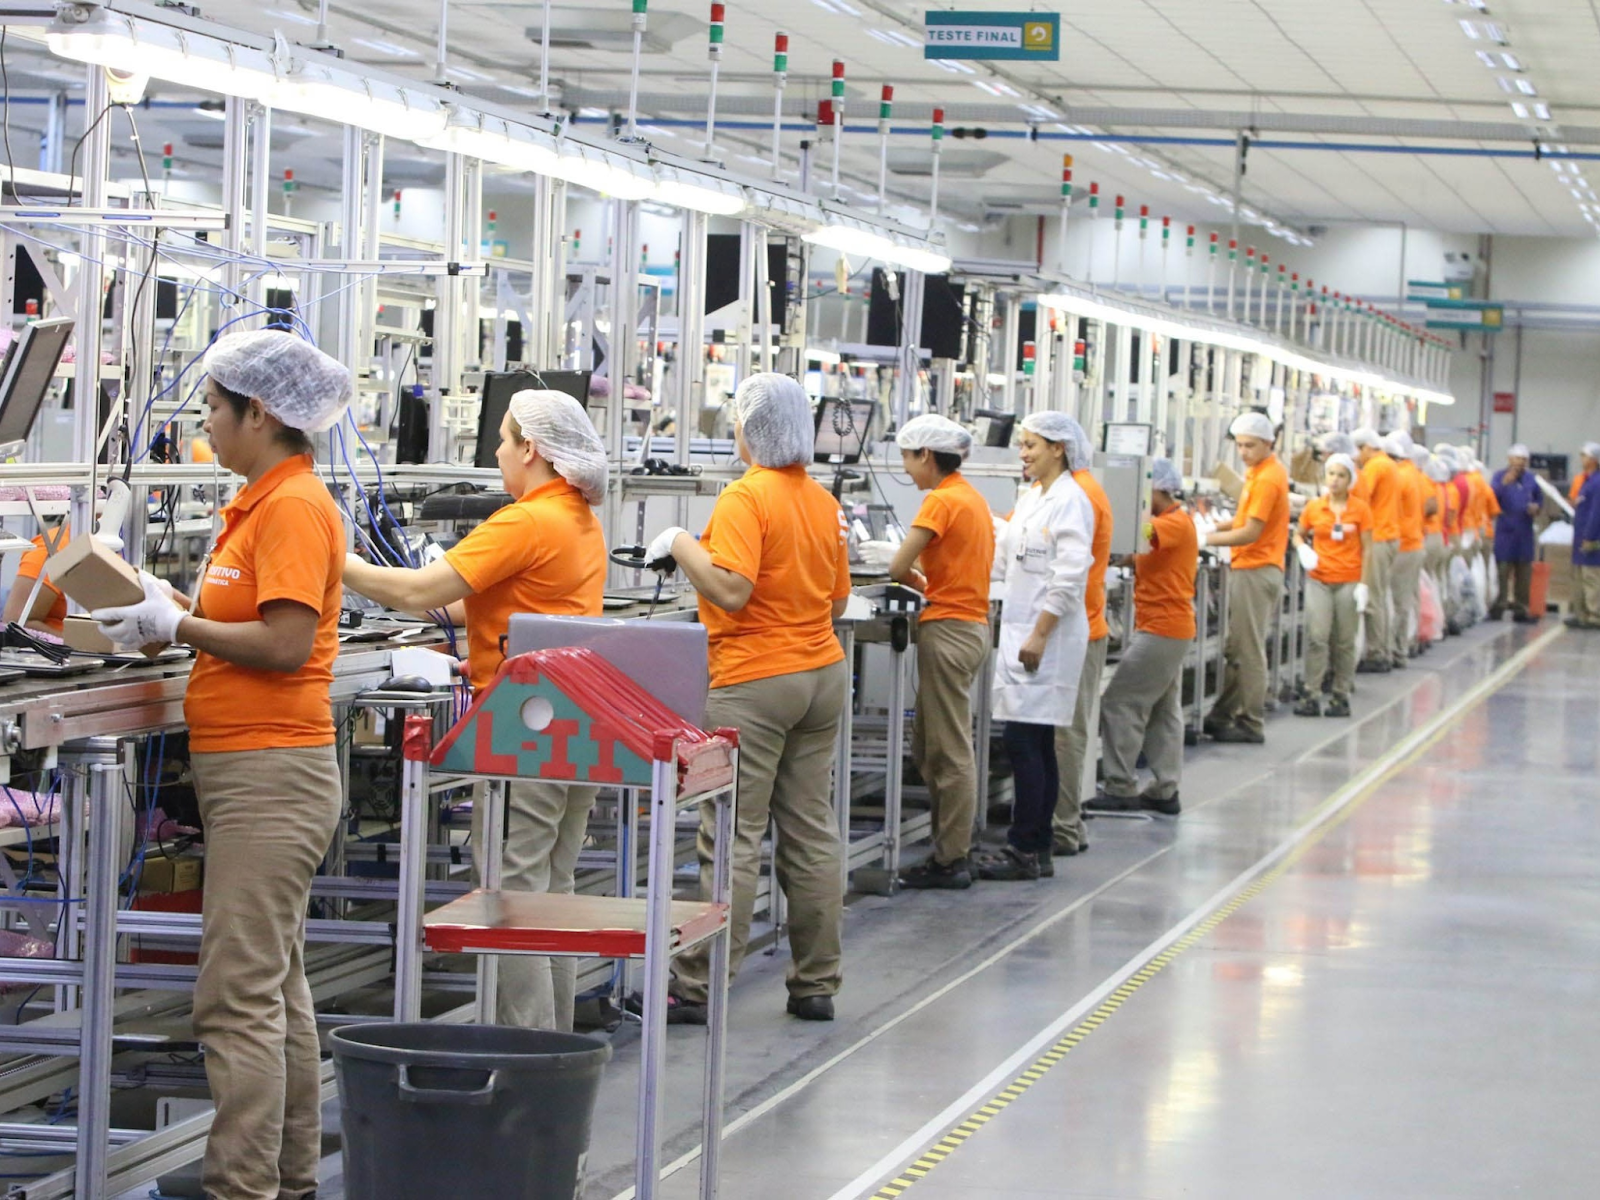 Funcionárias na linha de produção em uma fábrica.